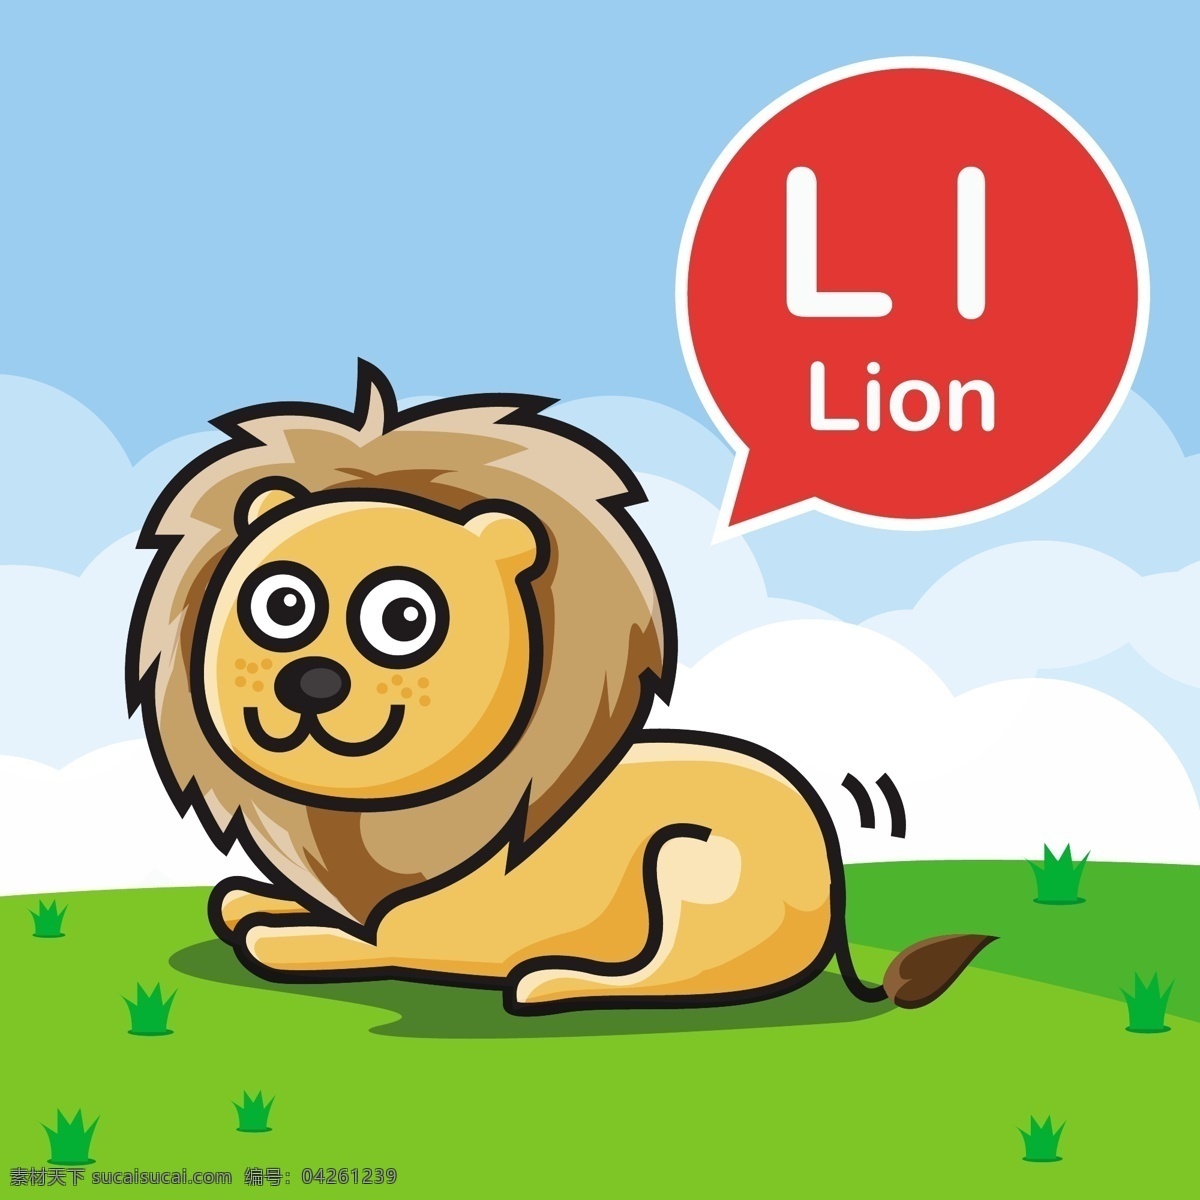 狮子 卡通 小 动物 矢量 背景 狮子王 英语 幼儿园 教学 学习 卡牌 手绘 形象